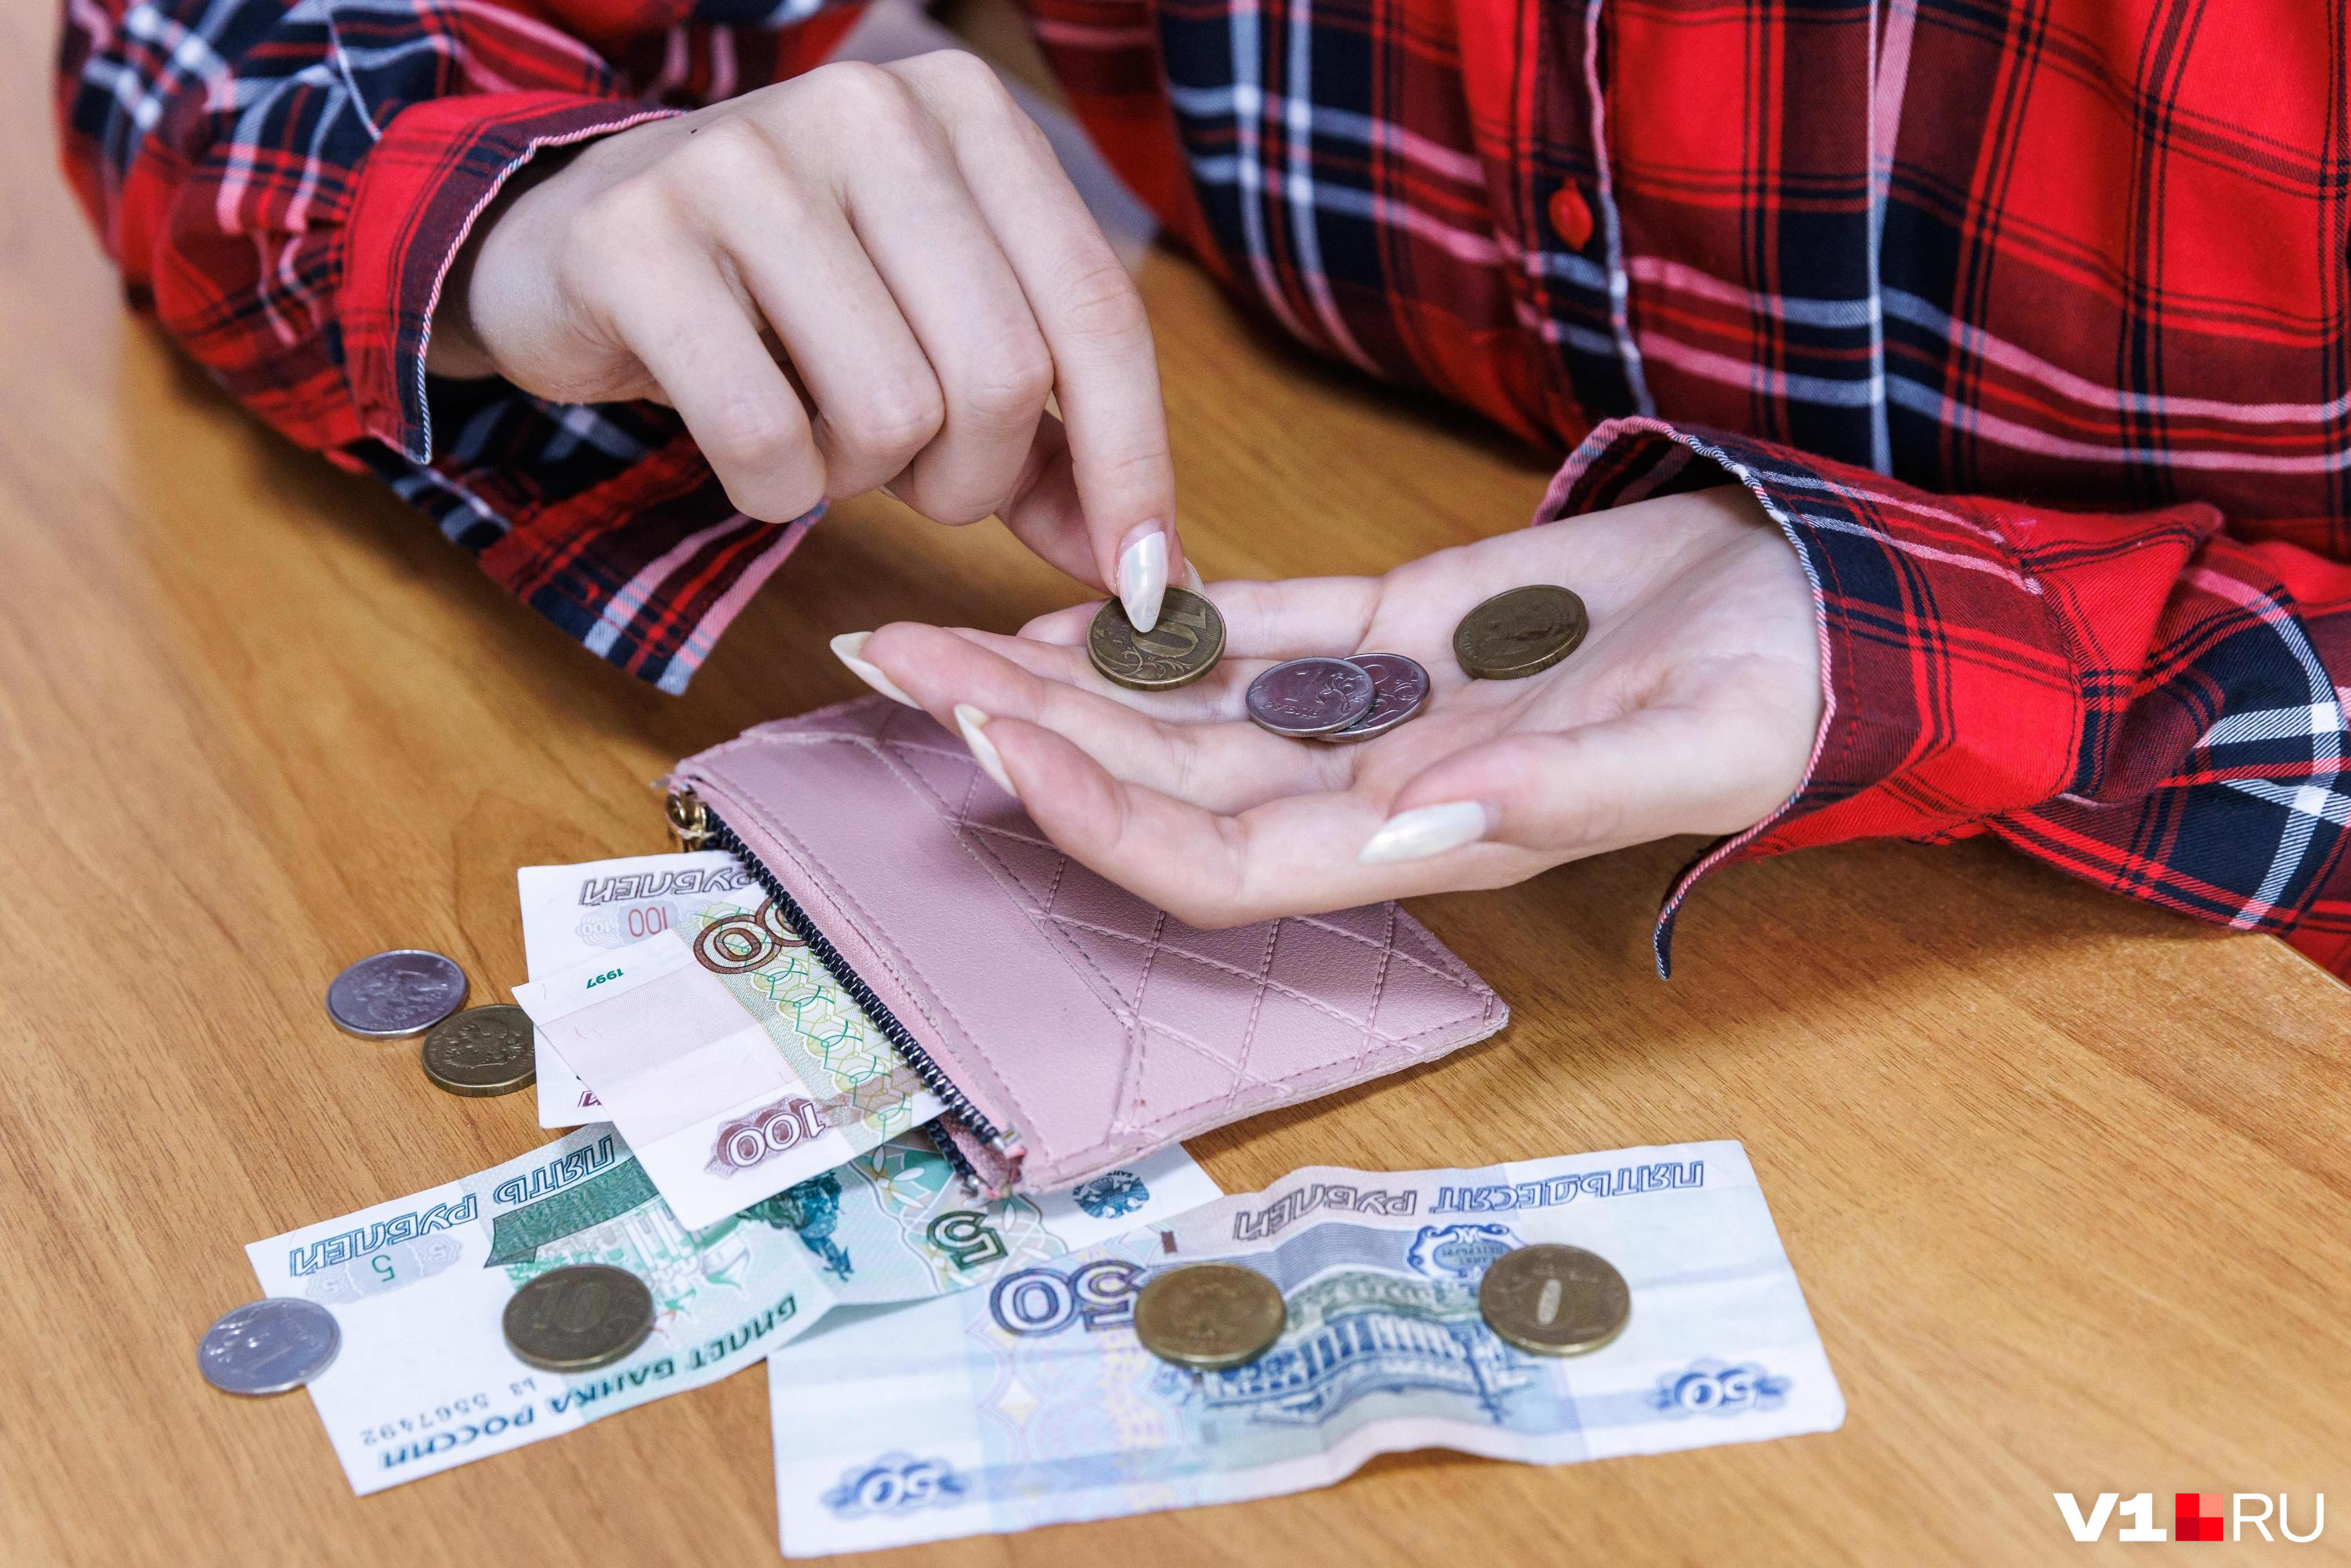 Зарплаты в Свердловской области взлетели до 75 тысяч рублей. Кто получает больше всех?